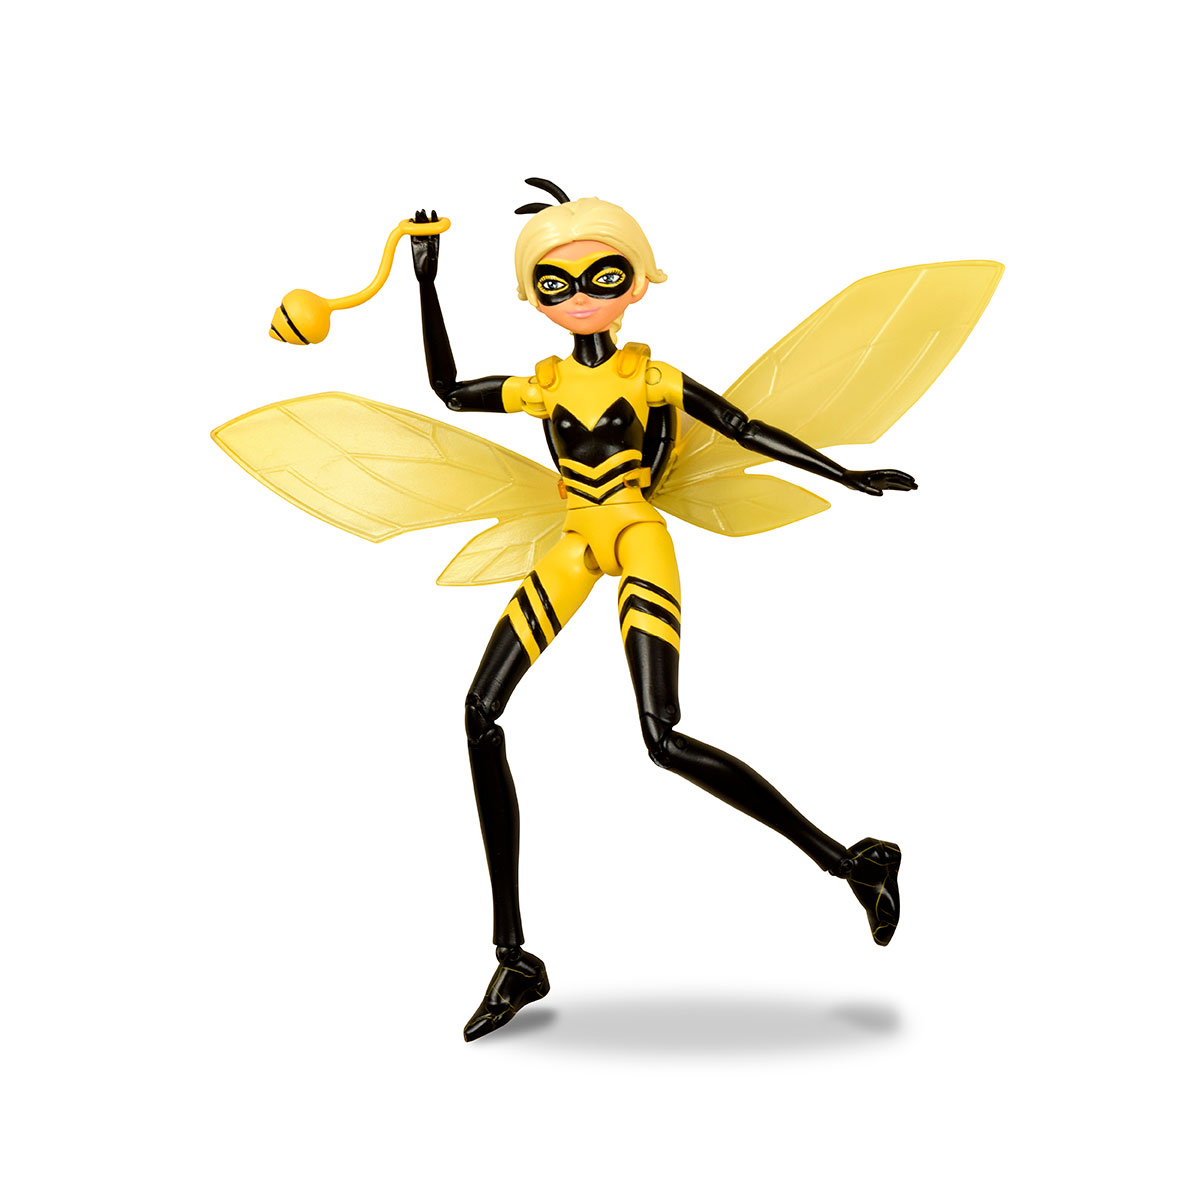 50405 Papusa Miraculous Queen Bee, 12 cm, cu accesorii